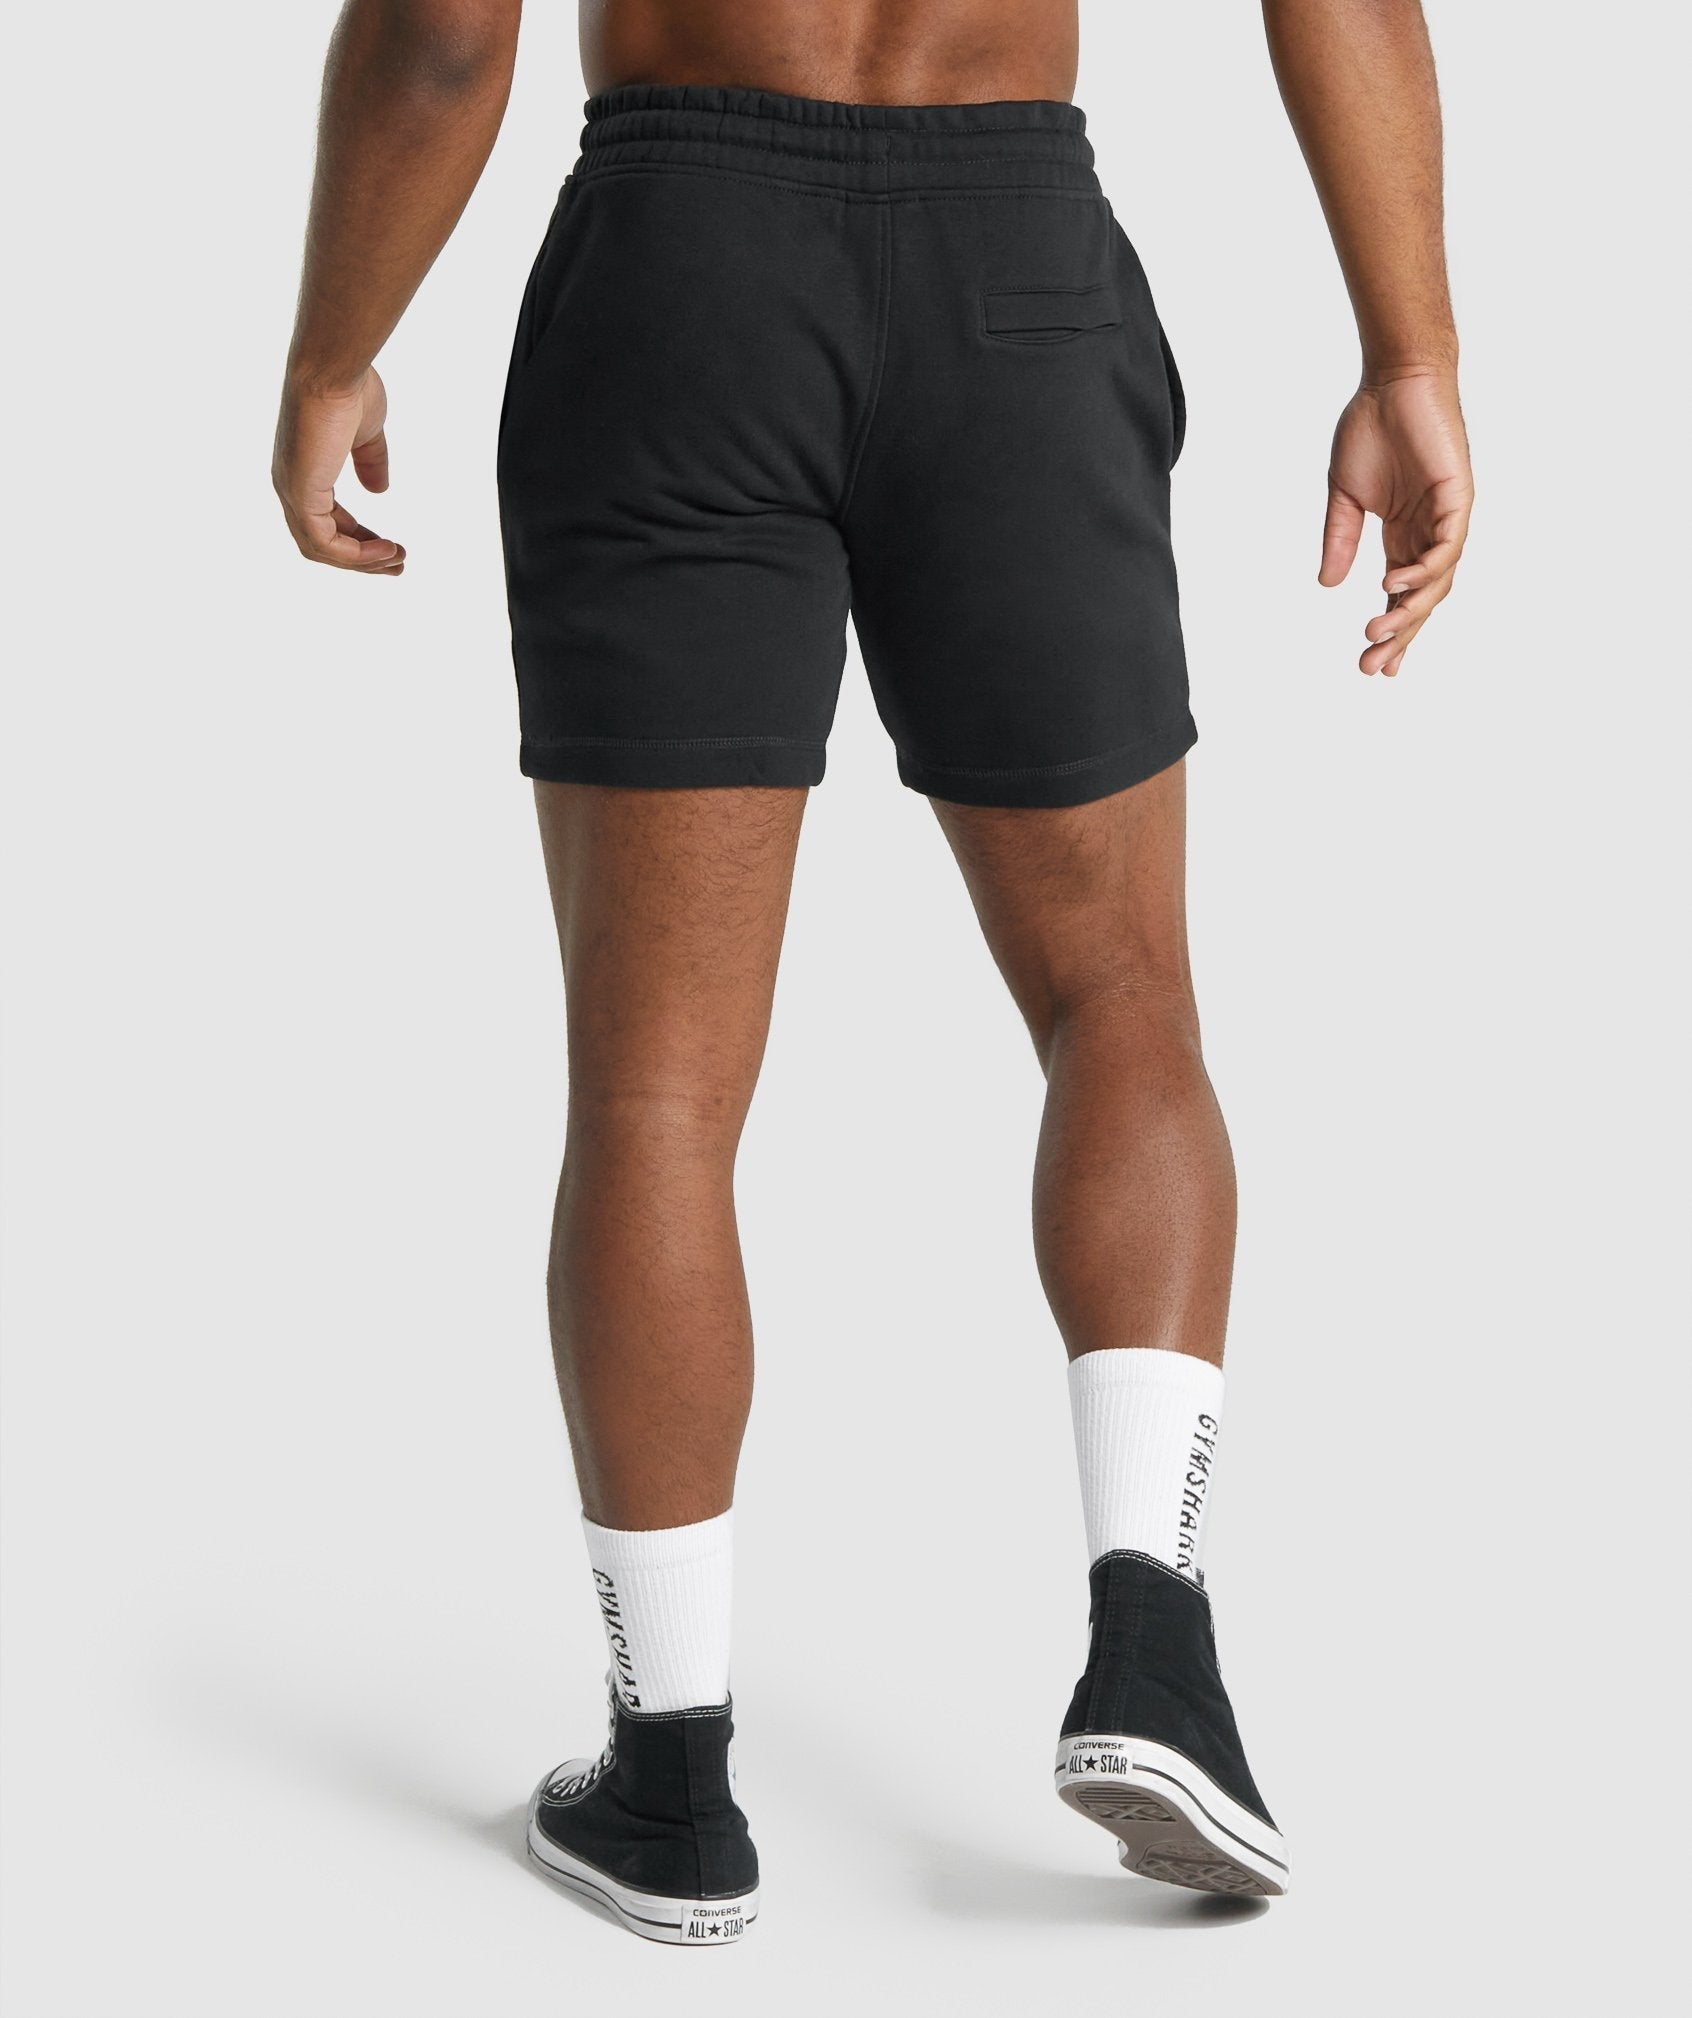  MAGNIVIT Men's Short Shorts Workout Gym Cotton Capri